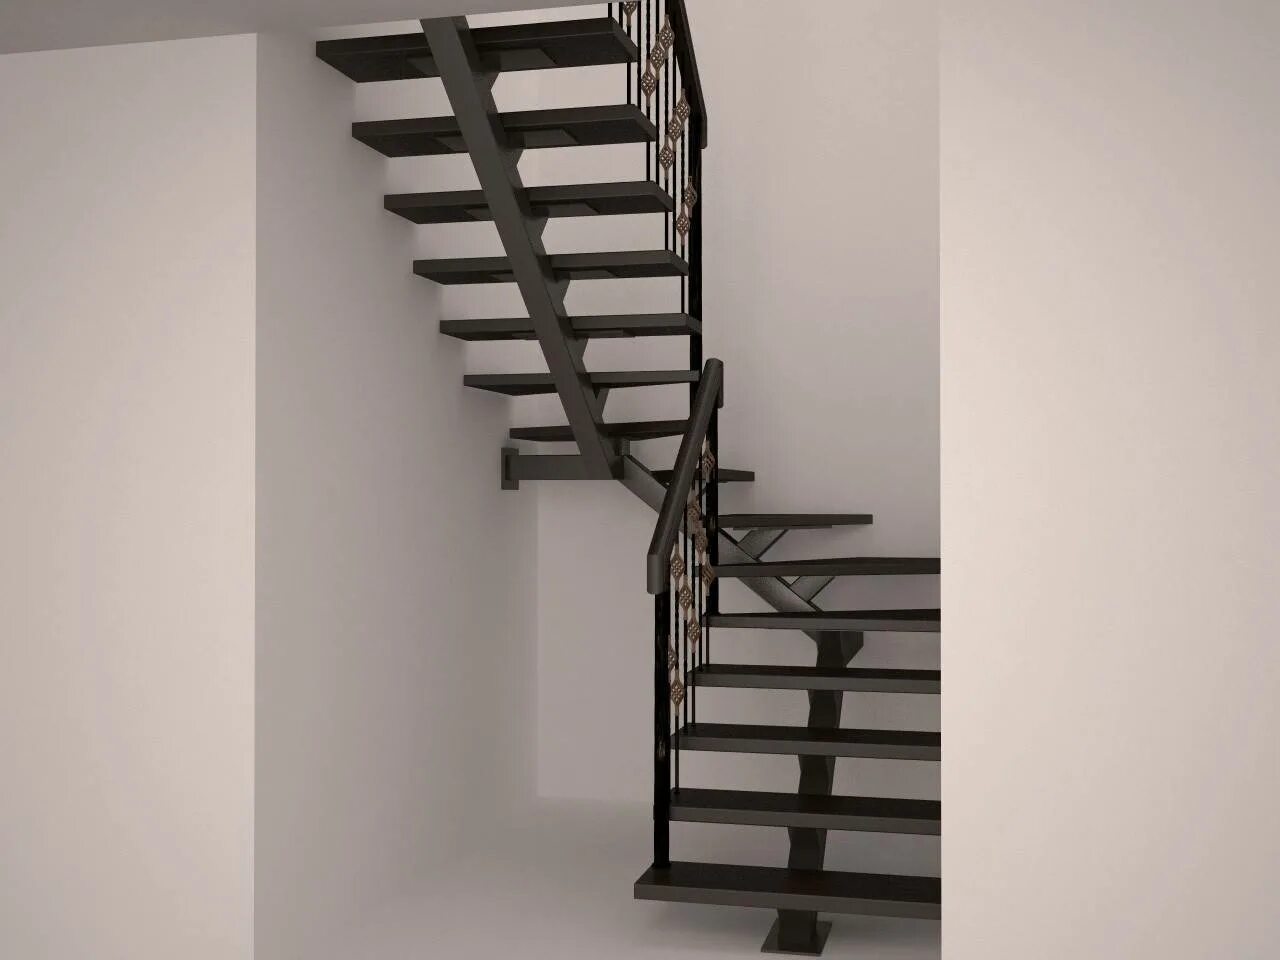 Лестница металлическая на второй цена. Лестница на металлическом монокосоуре с забежными ступенями. Лестница п-образная с забежными ступенями на металлическом каркасе. Лестница на монокосоуре из металла с забежными ступенями. Лестница металлокаркас.